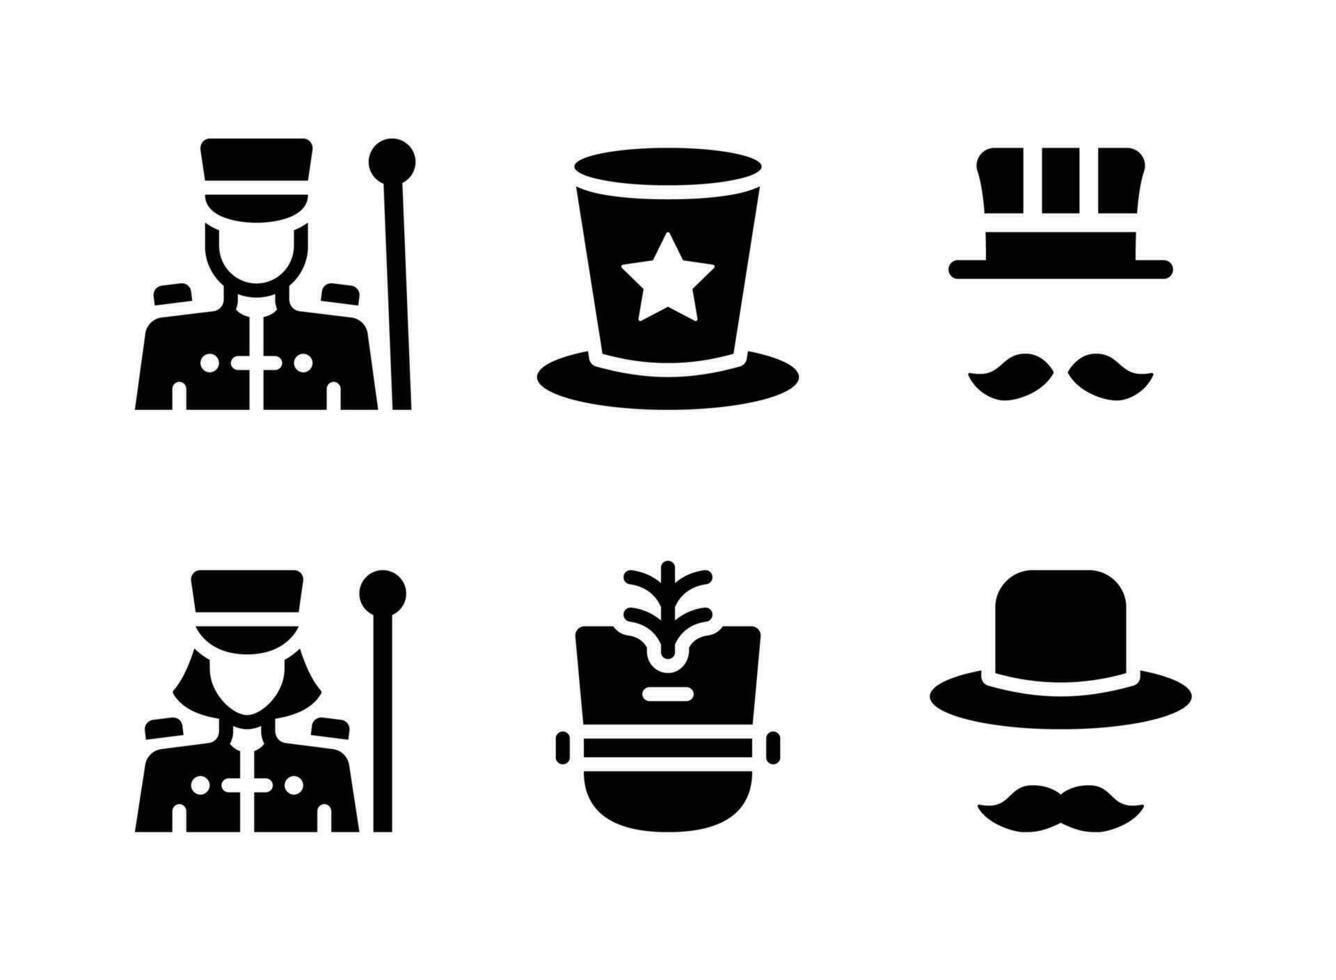 conjunto simples de ícones sólidos do vetor do festival de mardi gras